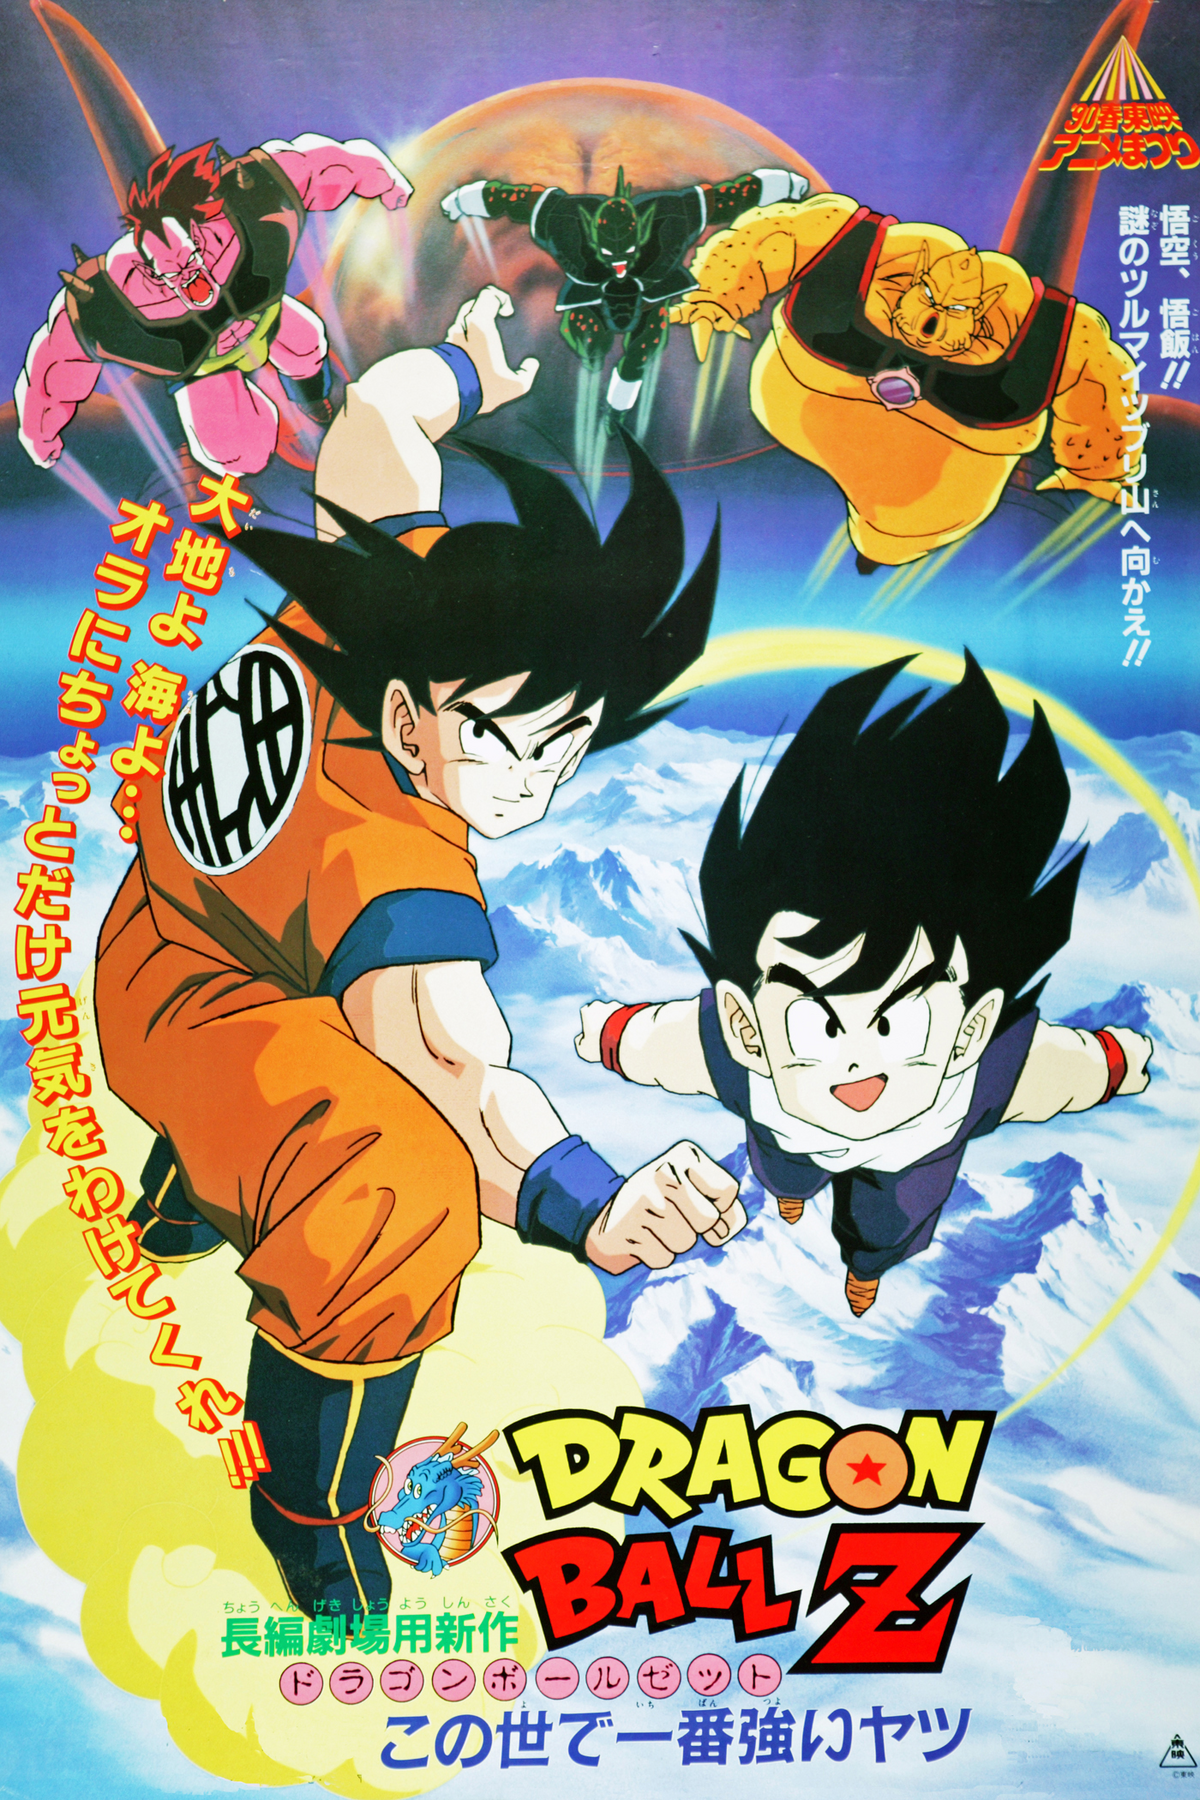 Dragon Ball Z (season 2) - Wikipedia